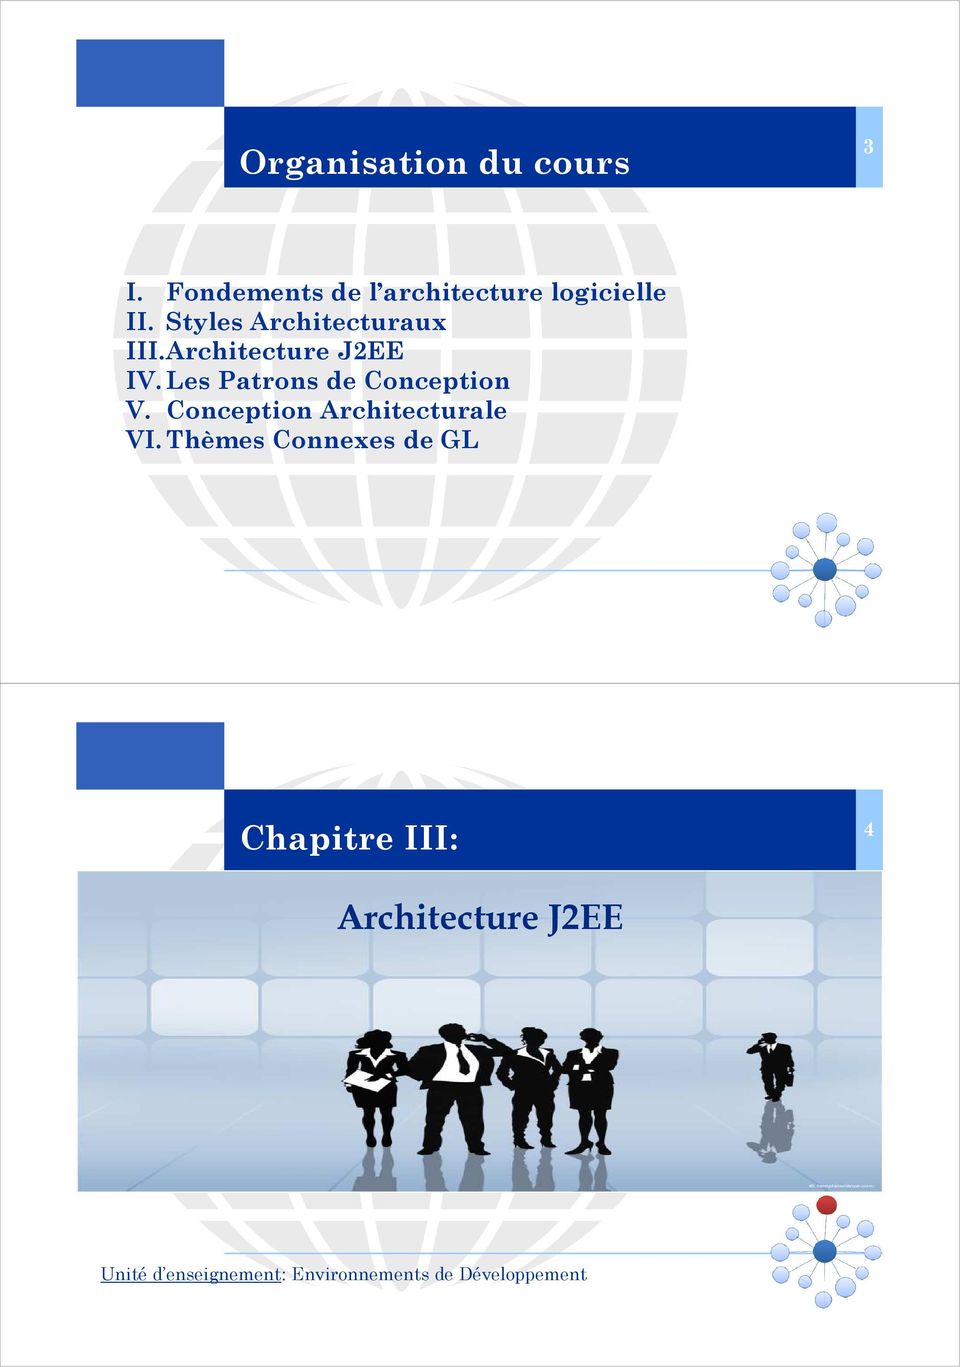 Styles Architecturaux III. J2EE IV. Les Patrons de Conception V.